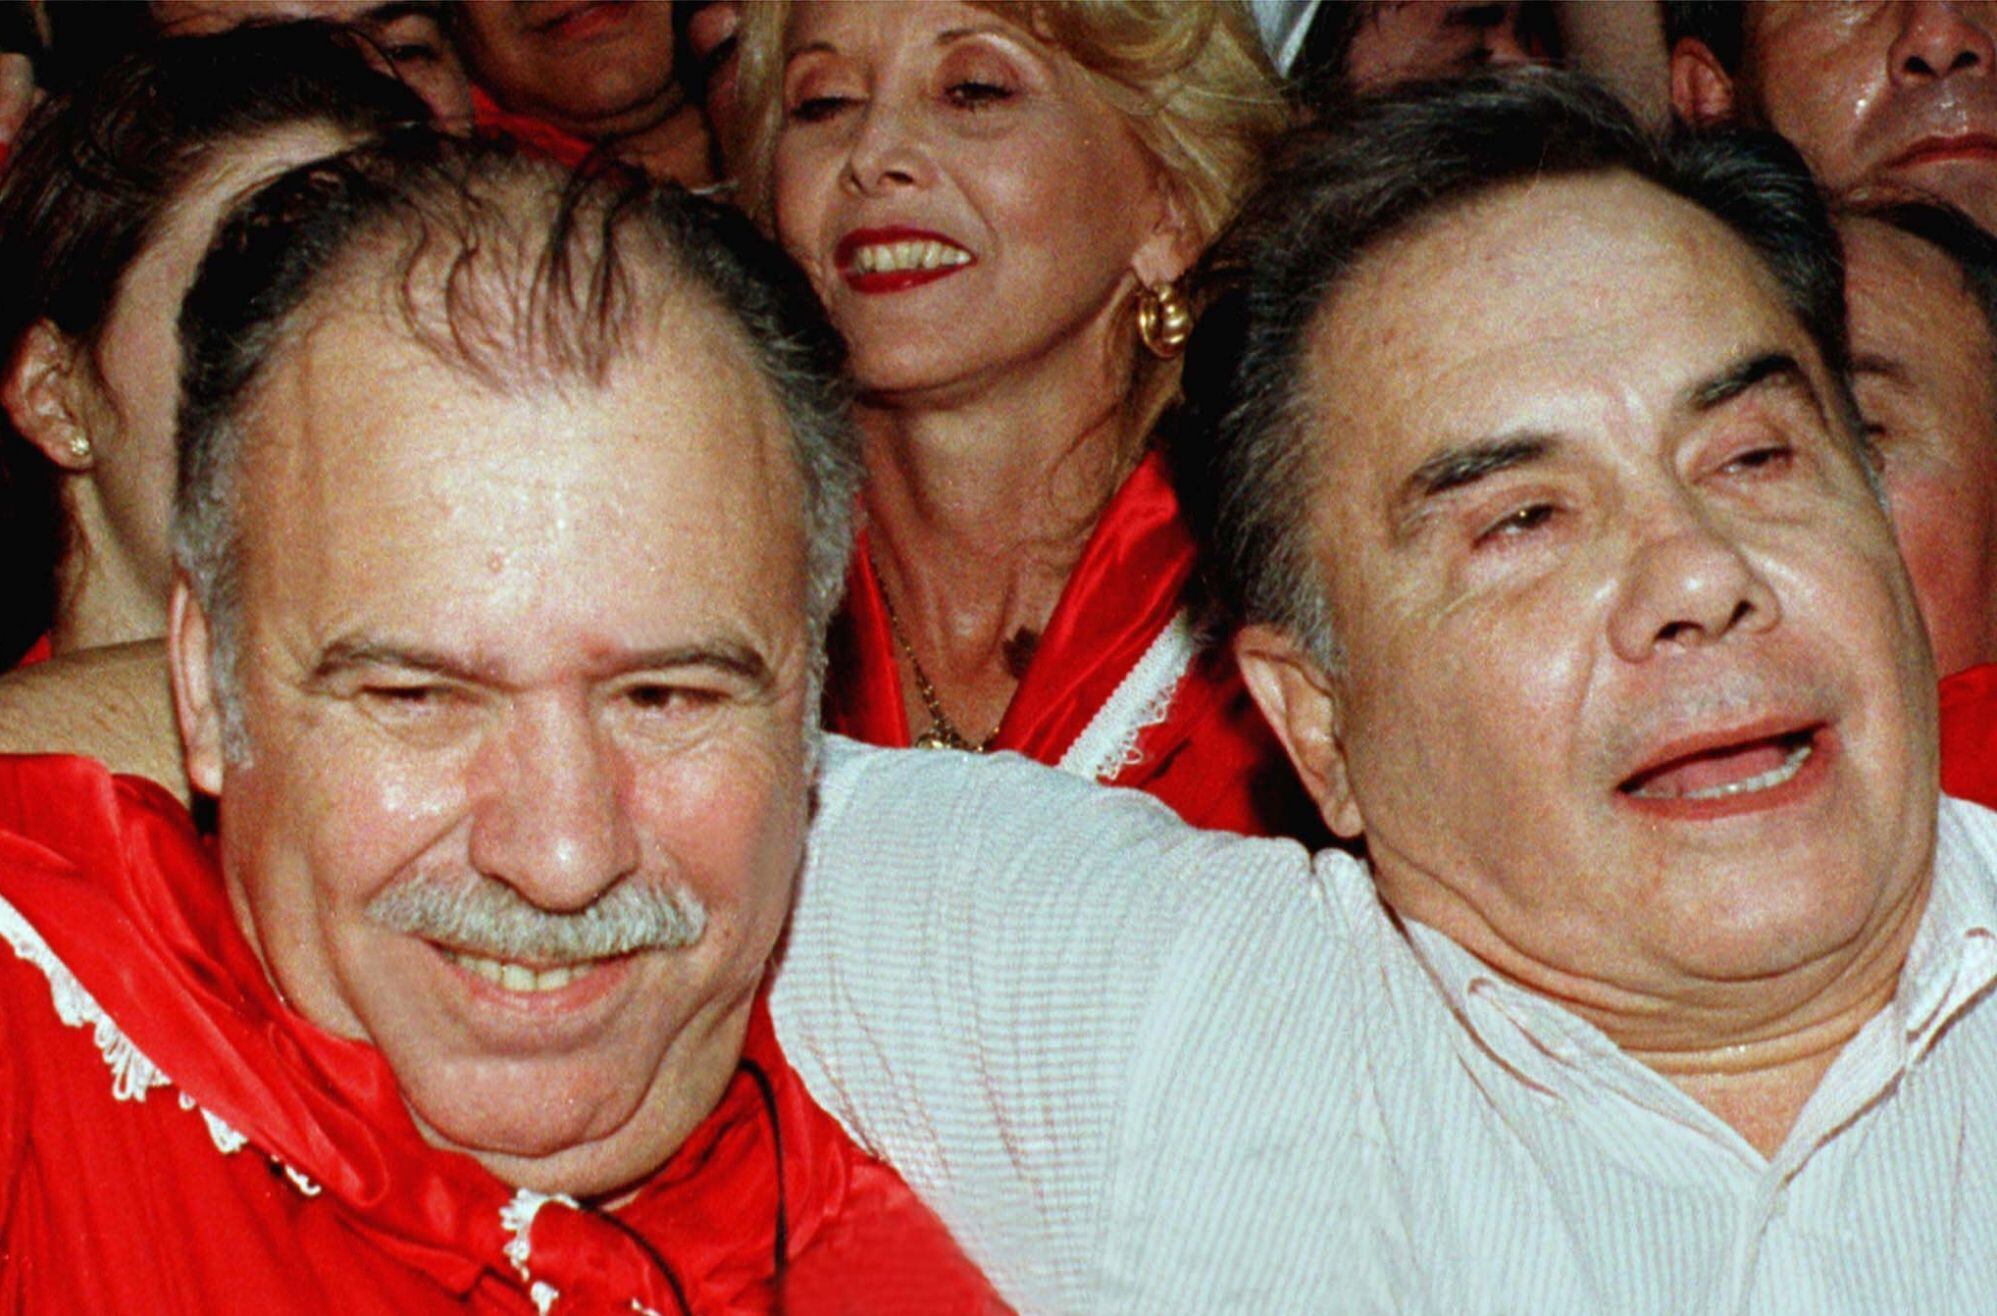 Raúl Cubas Grau (i) y Luis María Argaña ganan las elecciones presidenciales. Lino Oviedo había ganado la interna contra Argaña, pero fue enviado a la cárcel por la sublevación. Cubas, vice de Oviedo, encabezó la chapa y Argaña lo acompañó. Meses después de esta foto, Argaña fue asesinado dando inicio al Marzo Paraguayo.